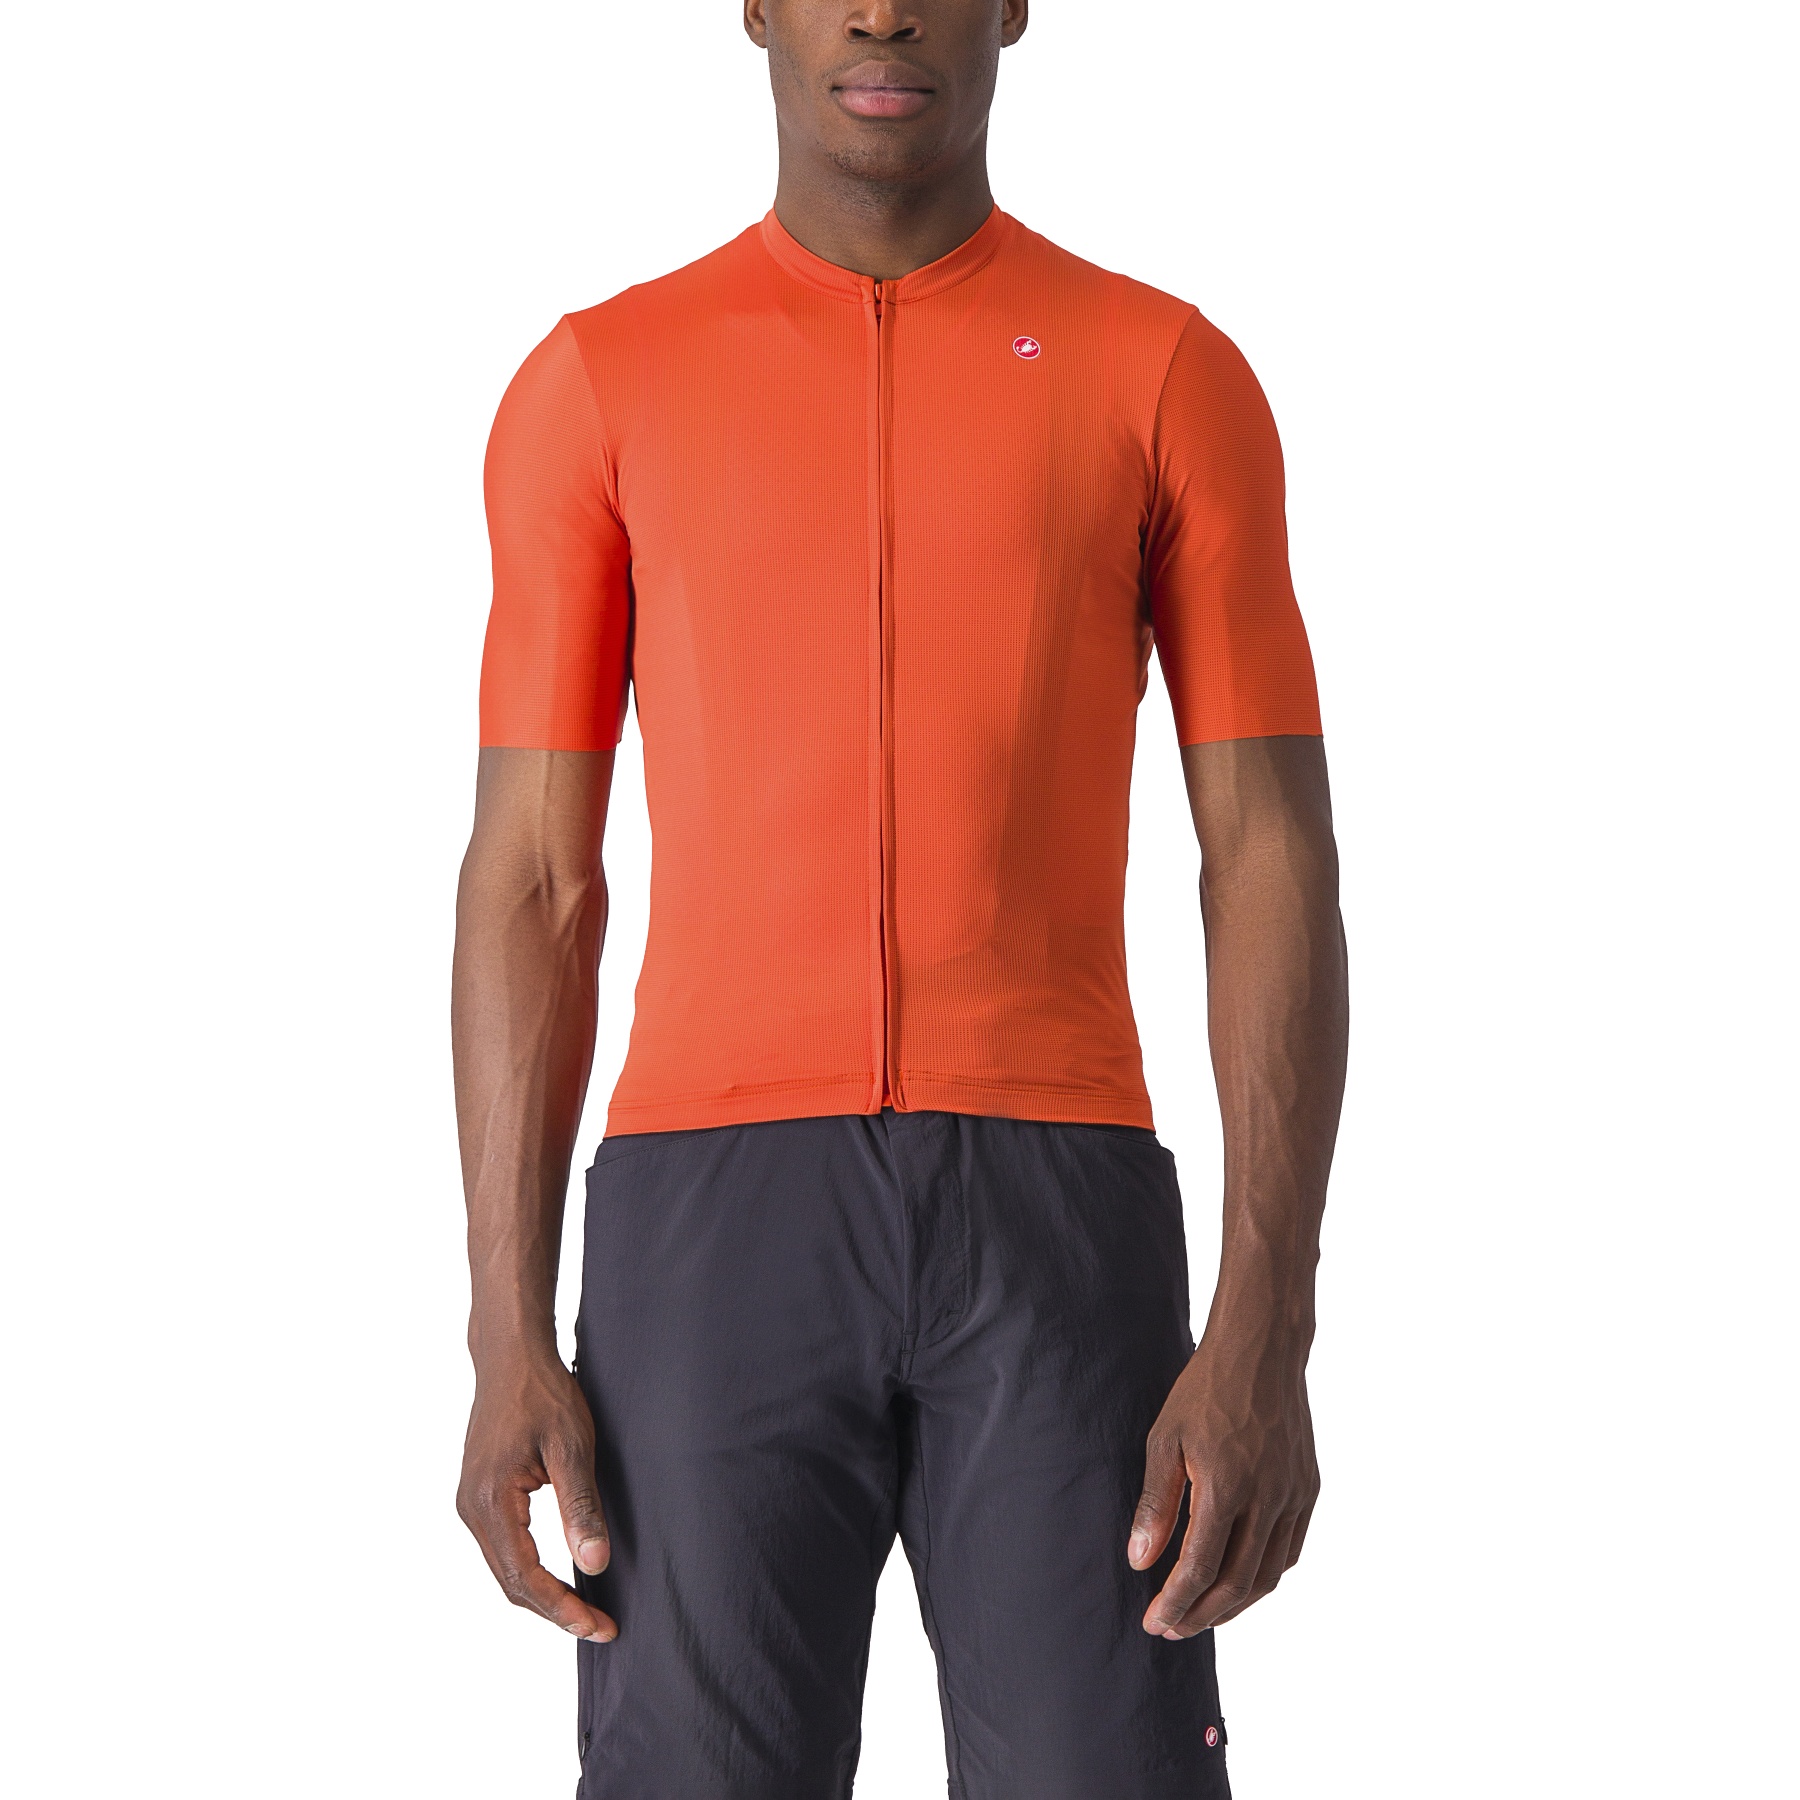 Productfoto van Castelli Unlimited Entrata 2 Fietsshirt met Korte Mouwen Heren - orange rust/grey 318